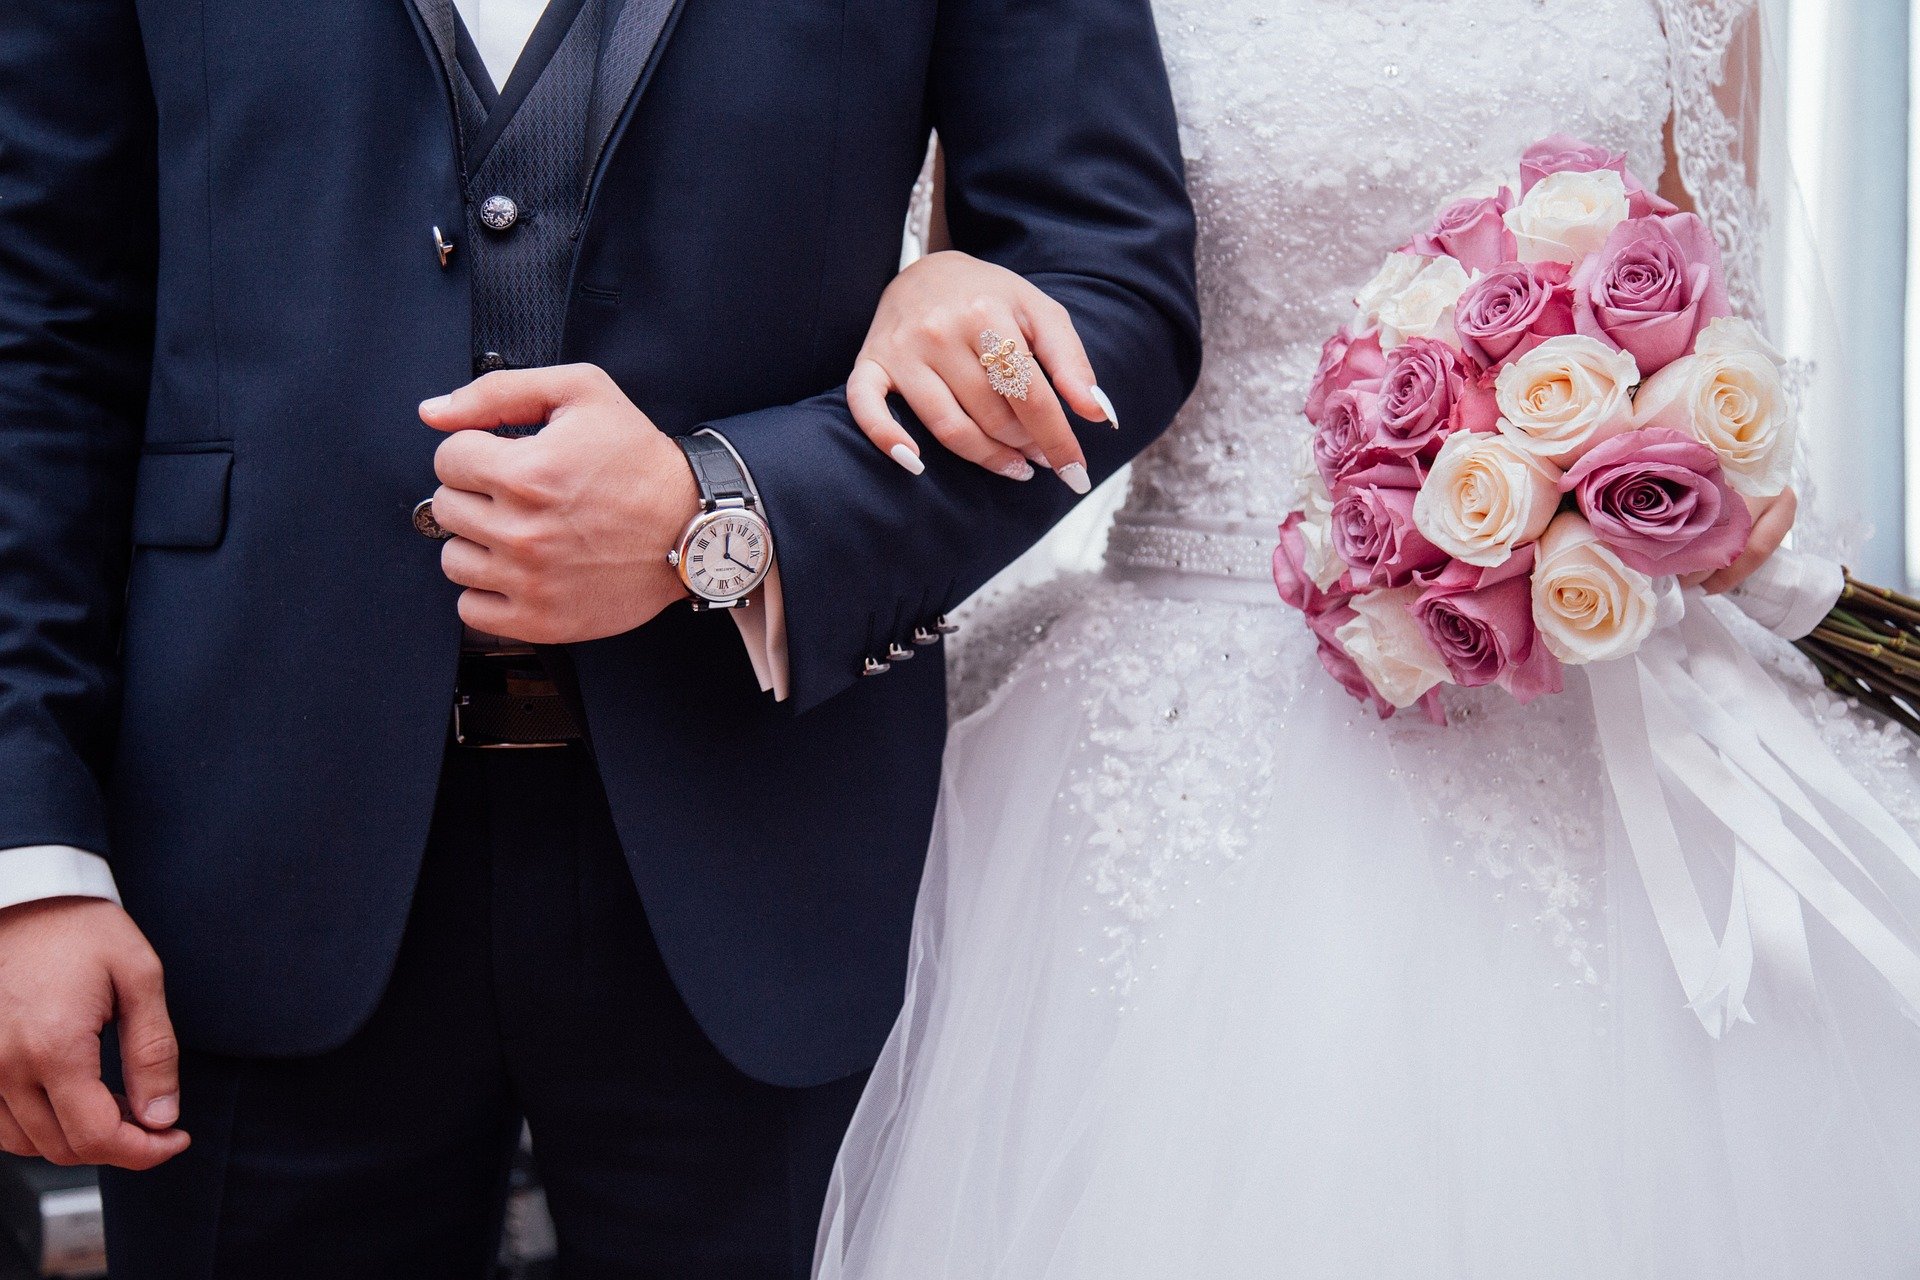 691 пара молодоженов зарегистрировала брак в Смоленской области в сентябре